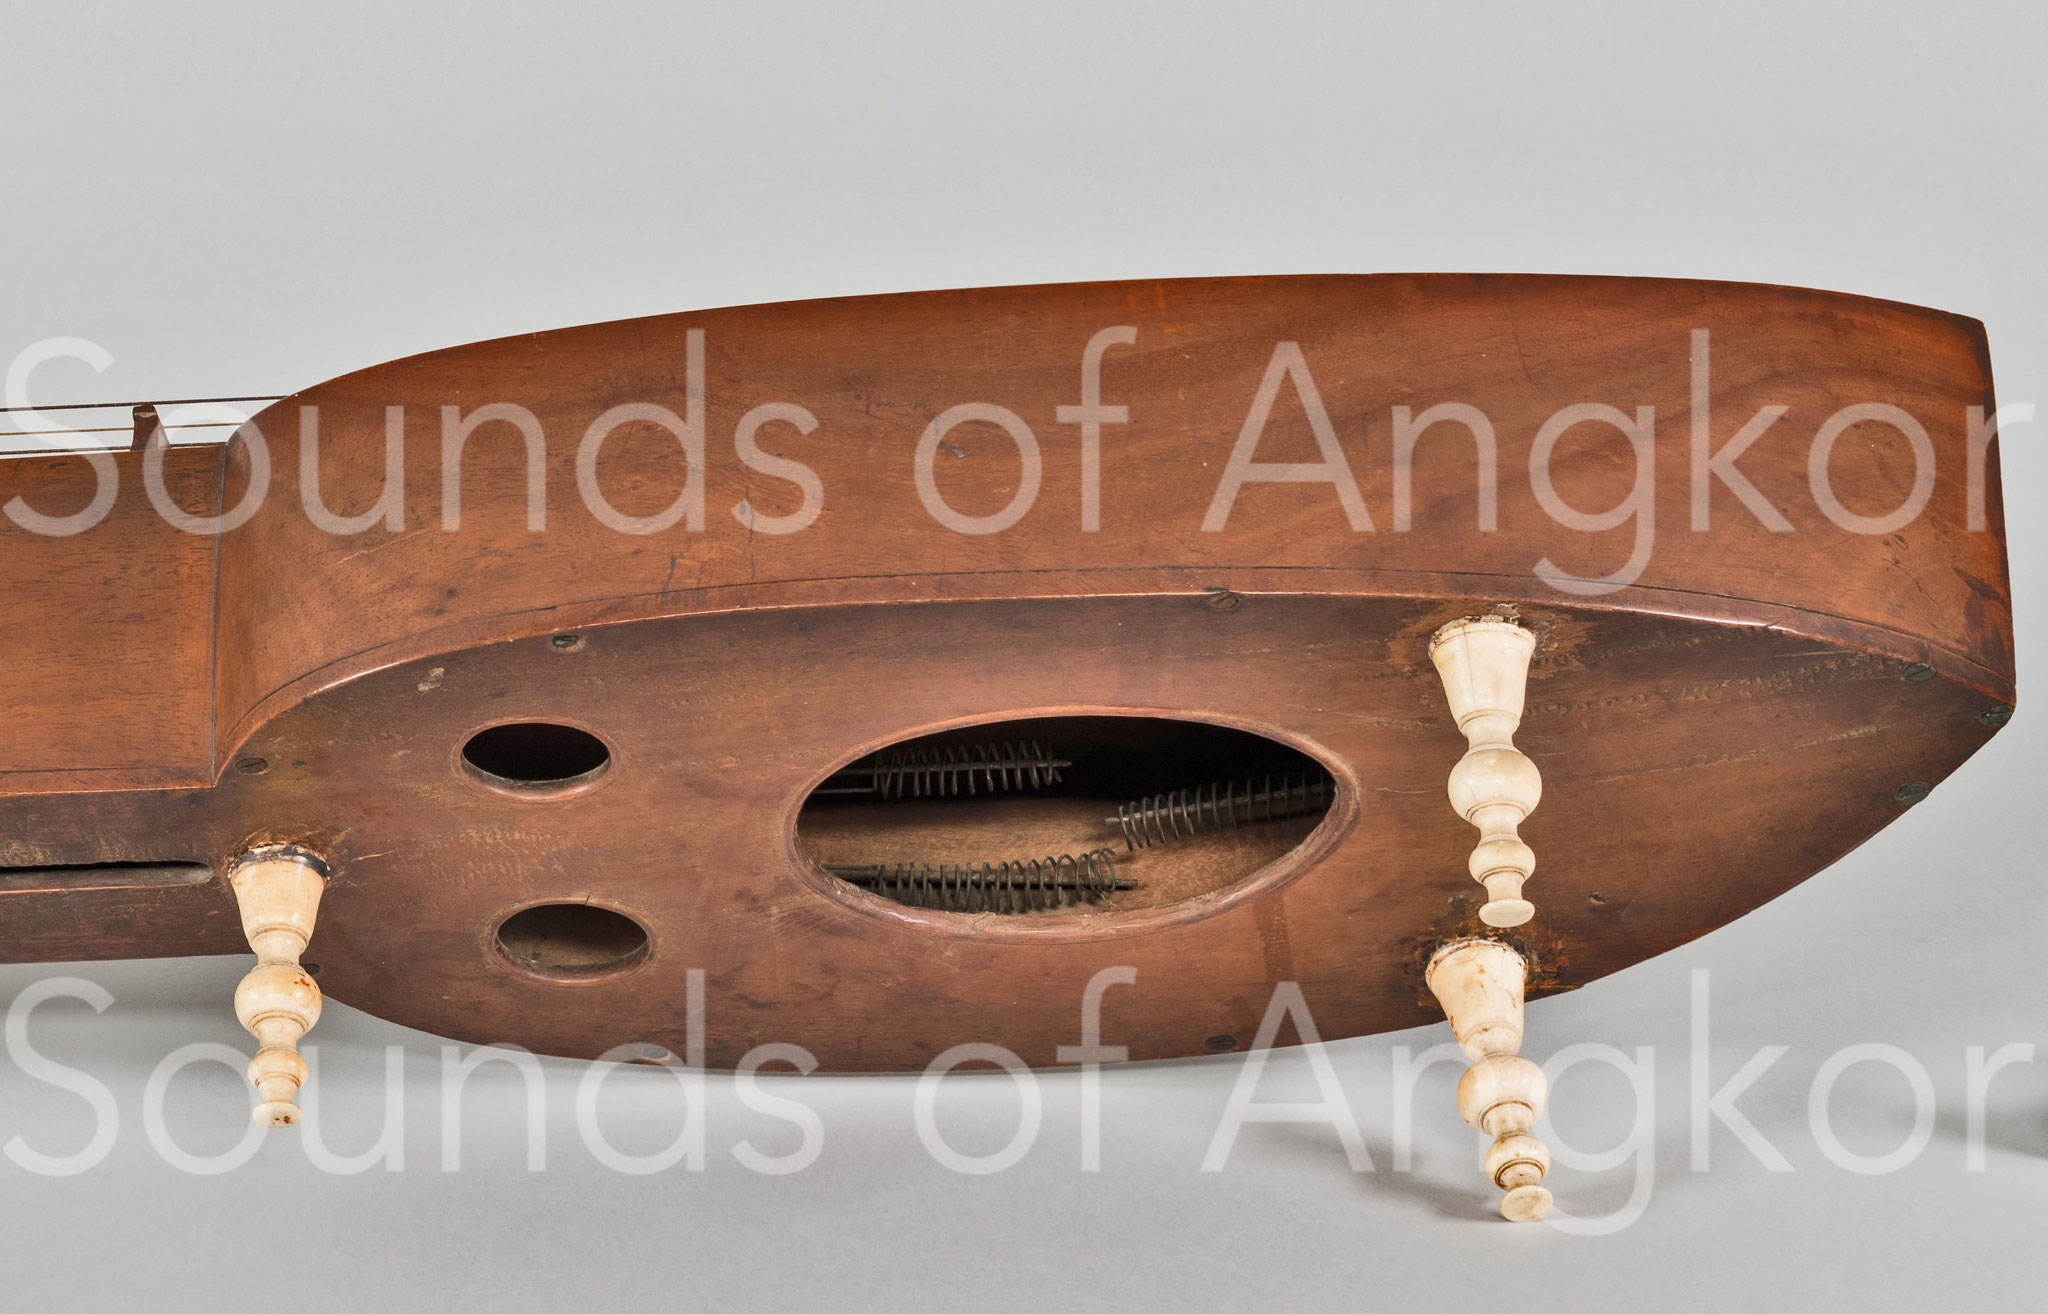 Vue des ressorts. Photo courtoisie Musical Instrument Museum, Phoenix, AZ.